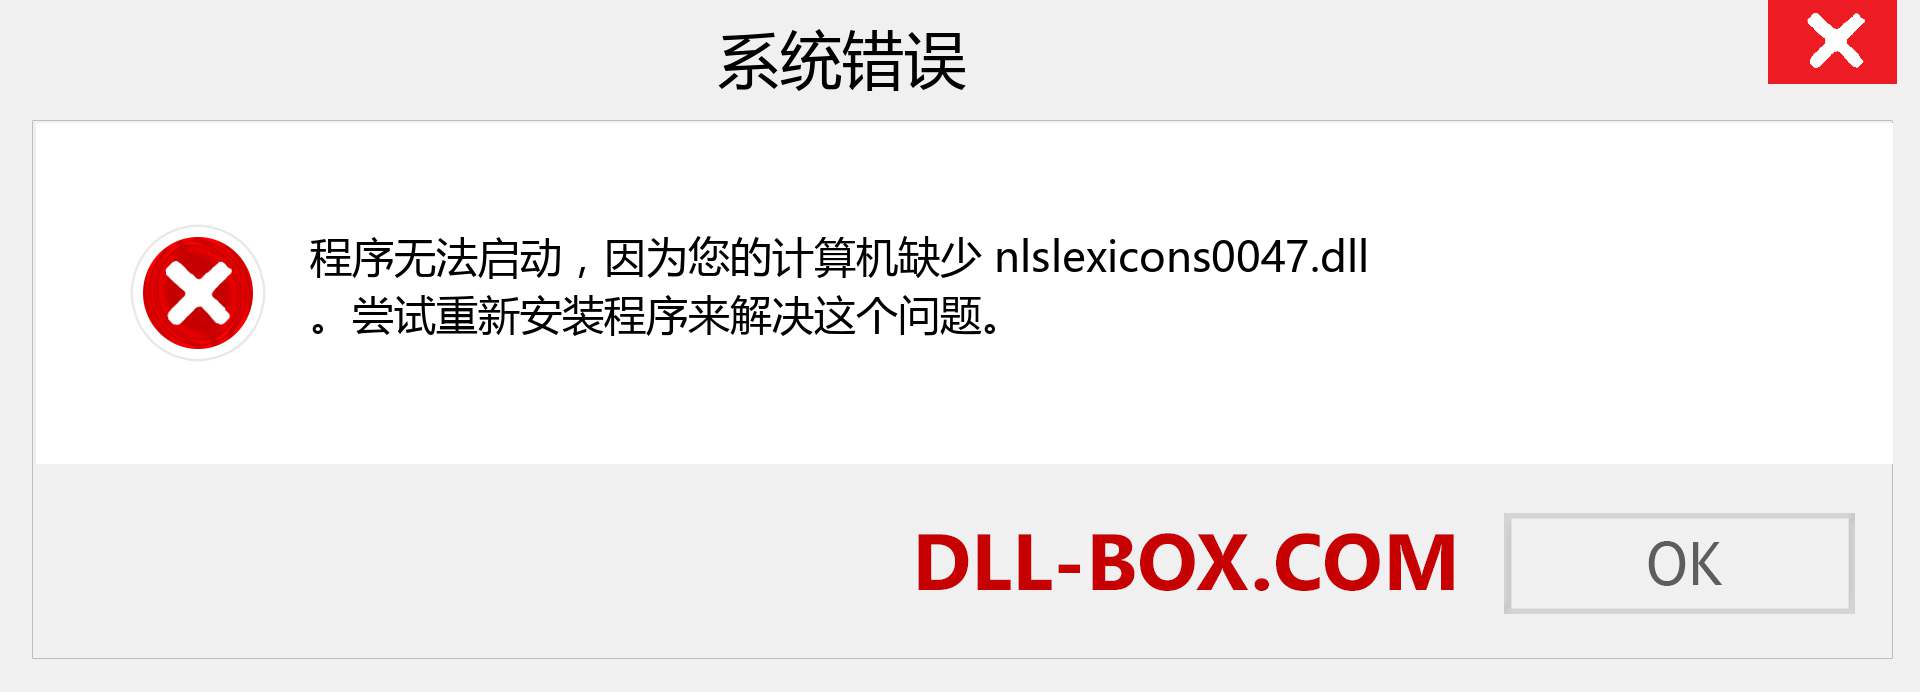 nlslexicons0047.dll 文件丢失？。 适用于 Windows 7、8、10 的下载 - 修复 Windows、照片、图像上的 nlslexicons0047 dll 丢失错误